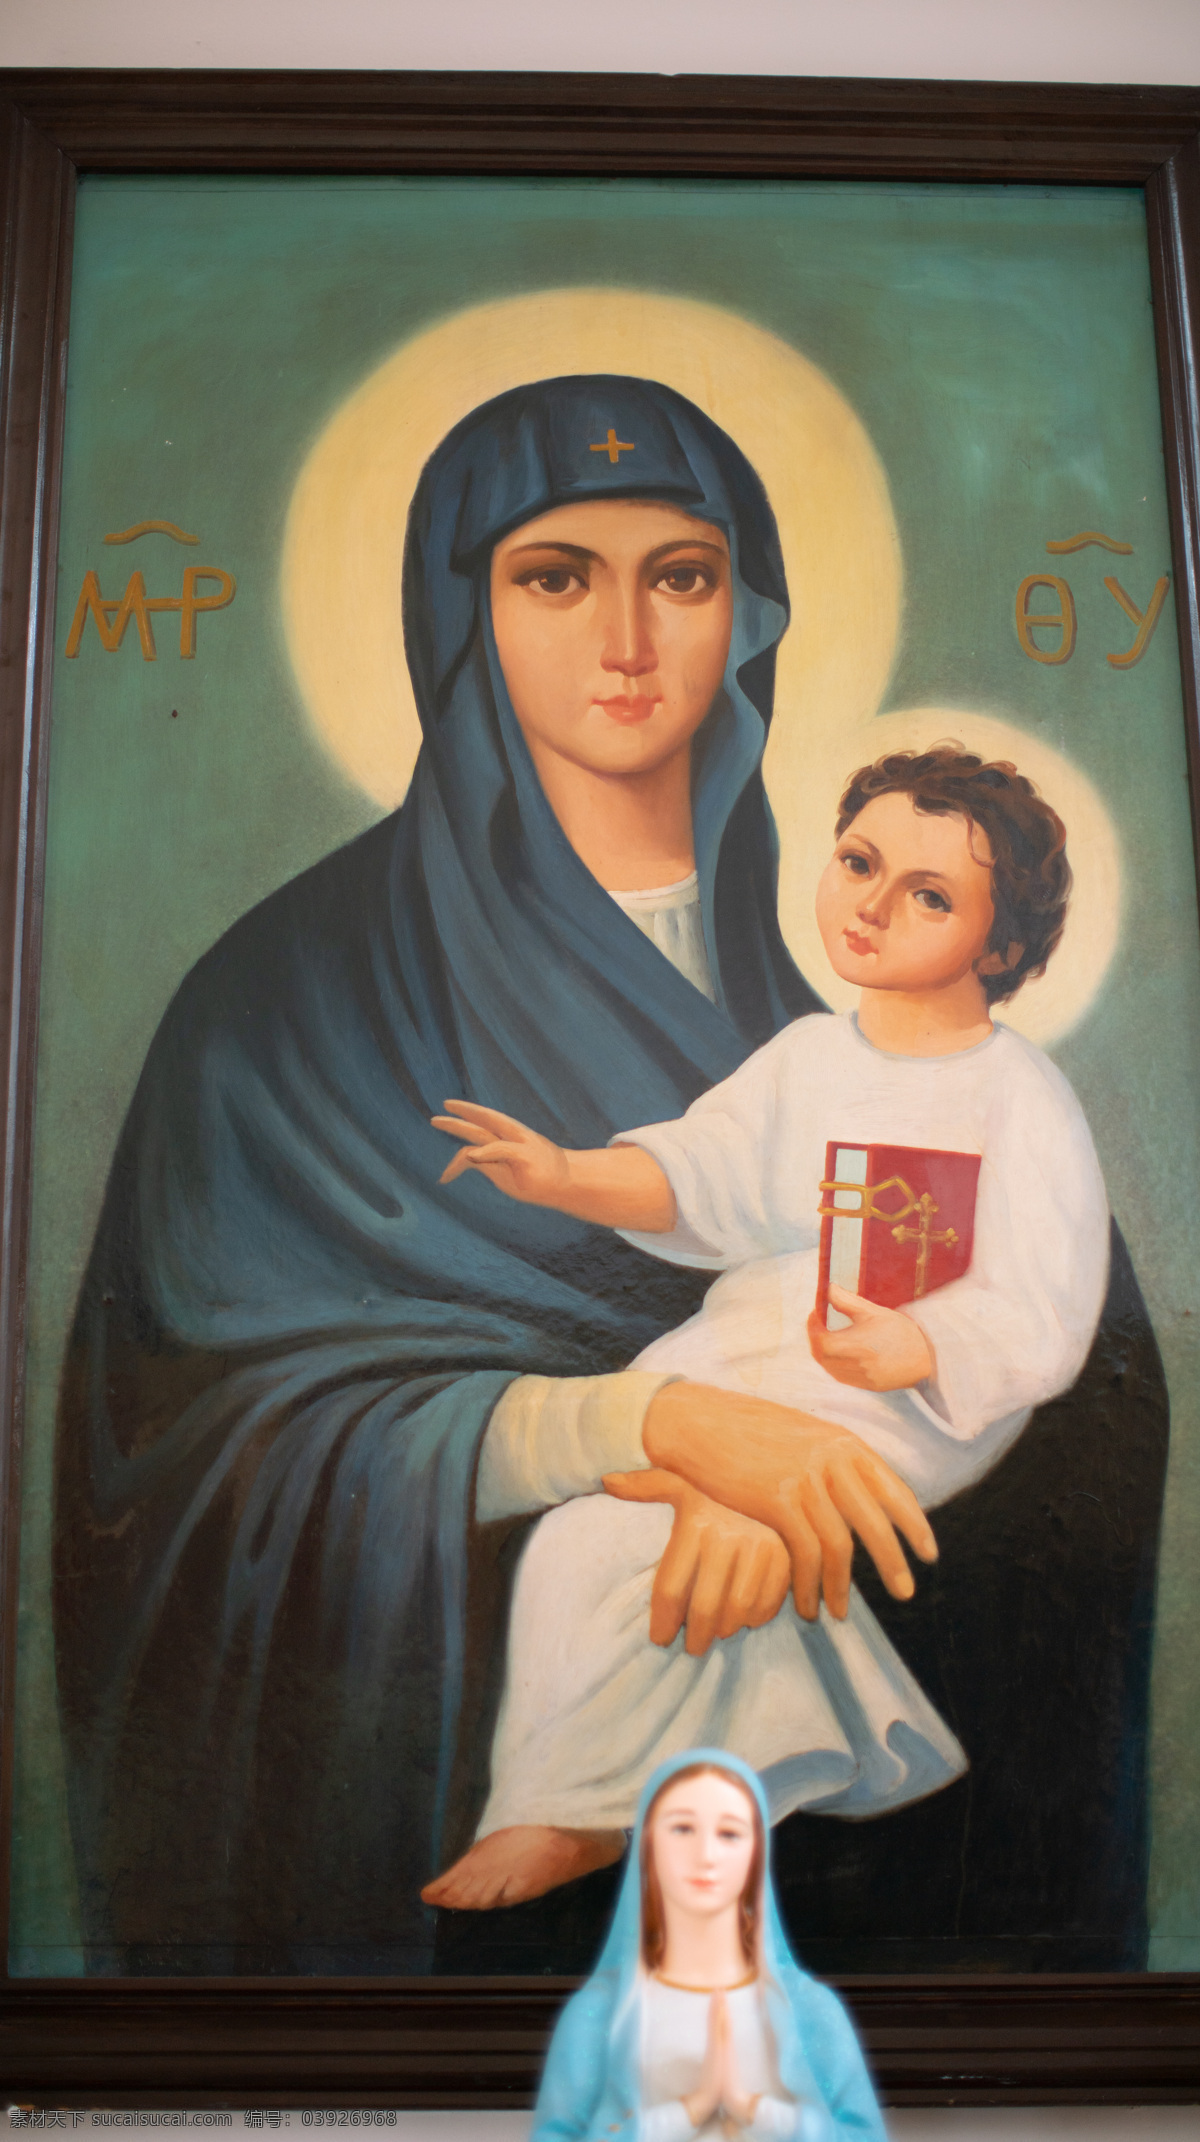 圣母 玛利亚 圣母玛利亚 教堂画像 玛利亚画像 教堂 画像 旅游摄影 国外旅游